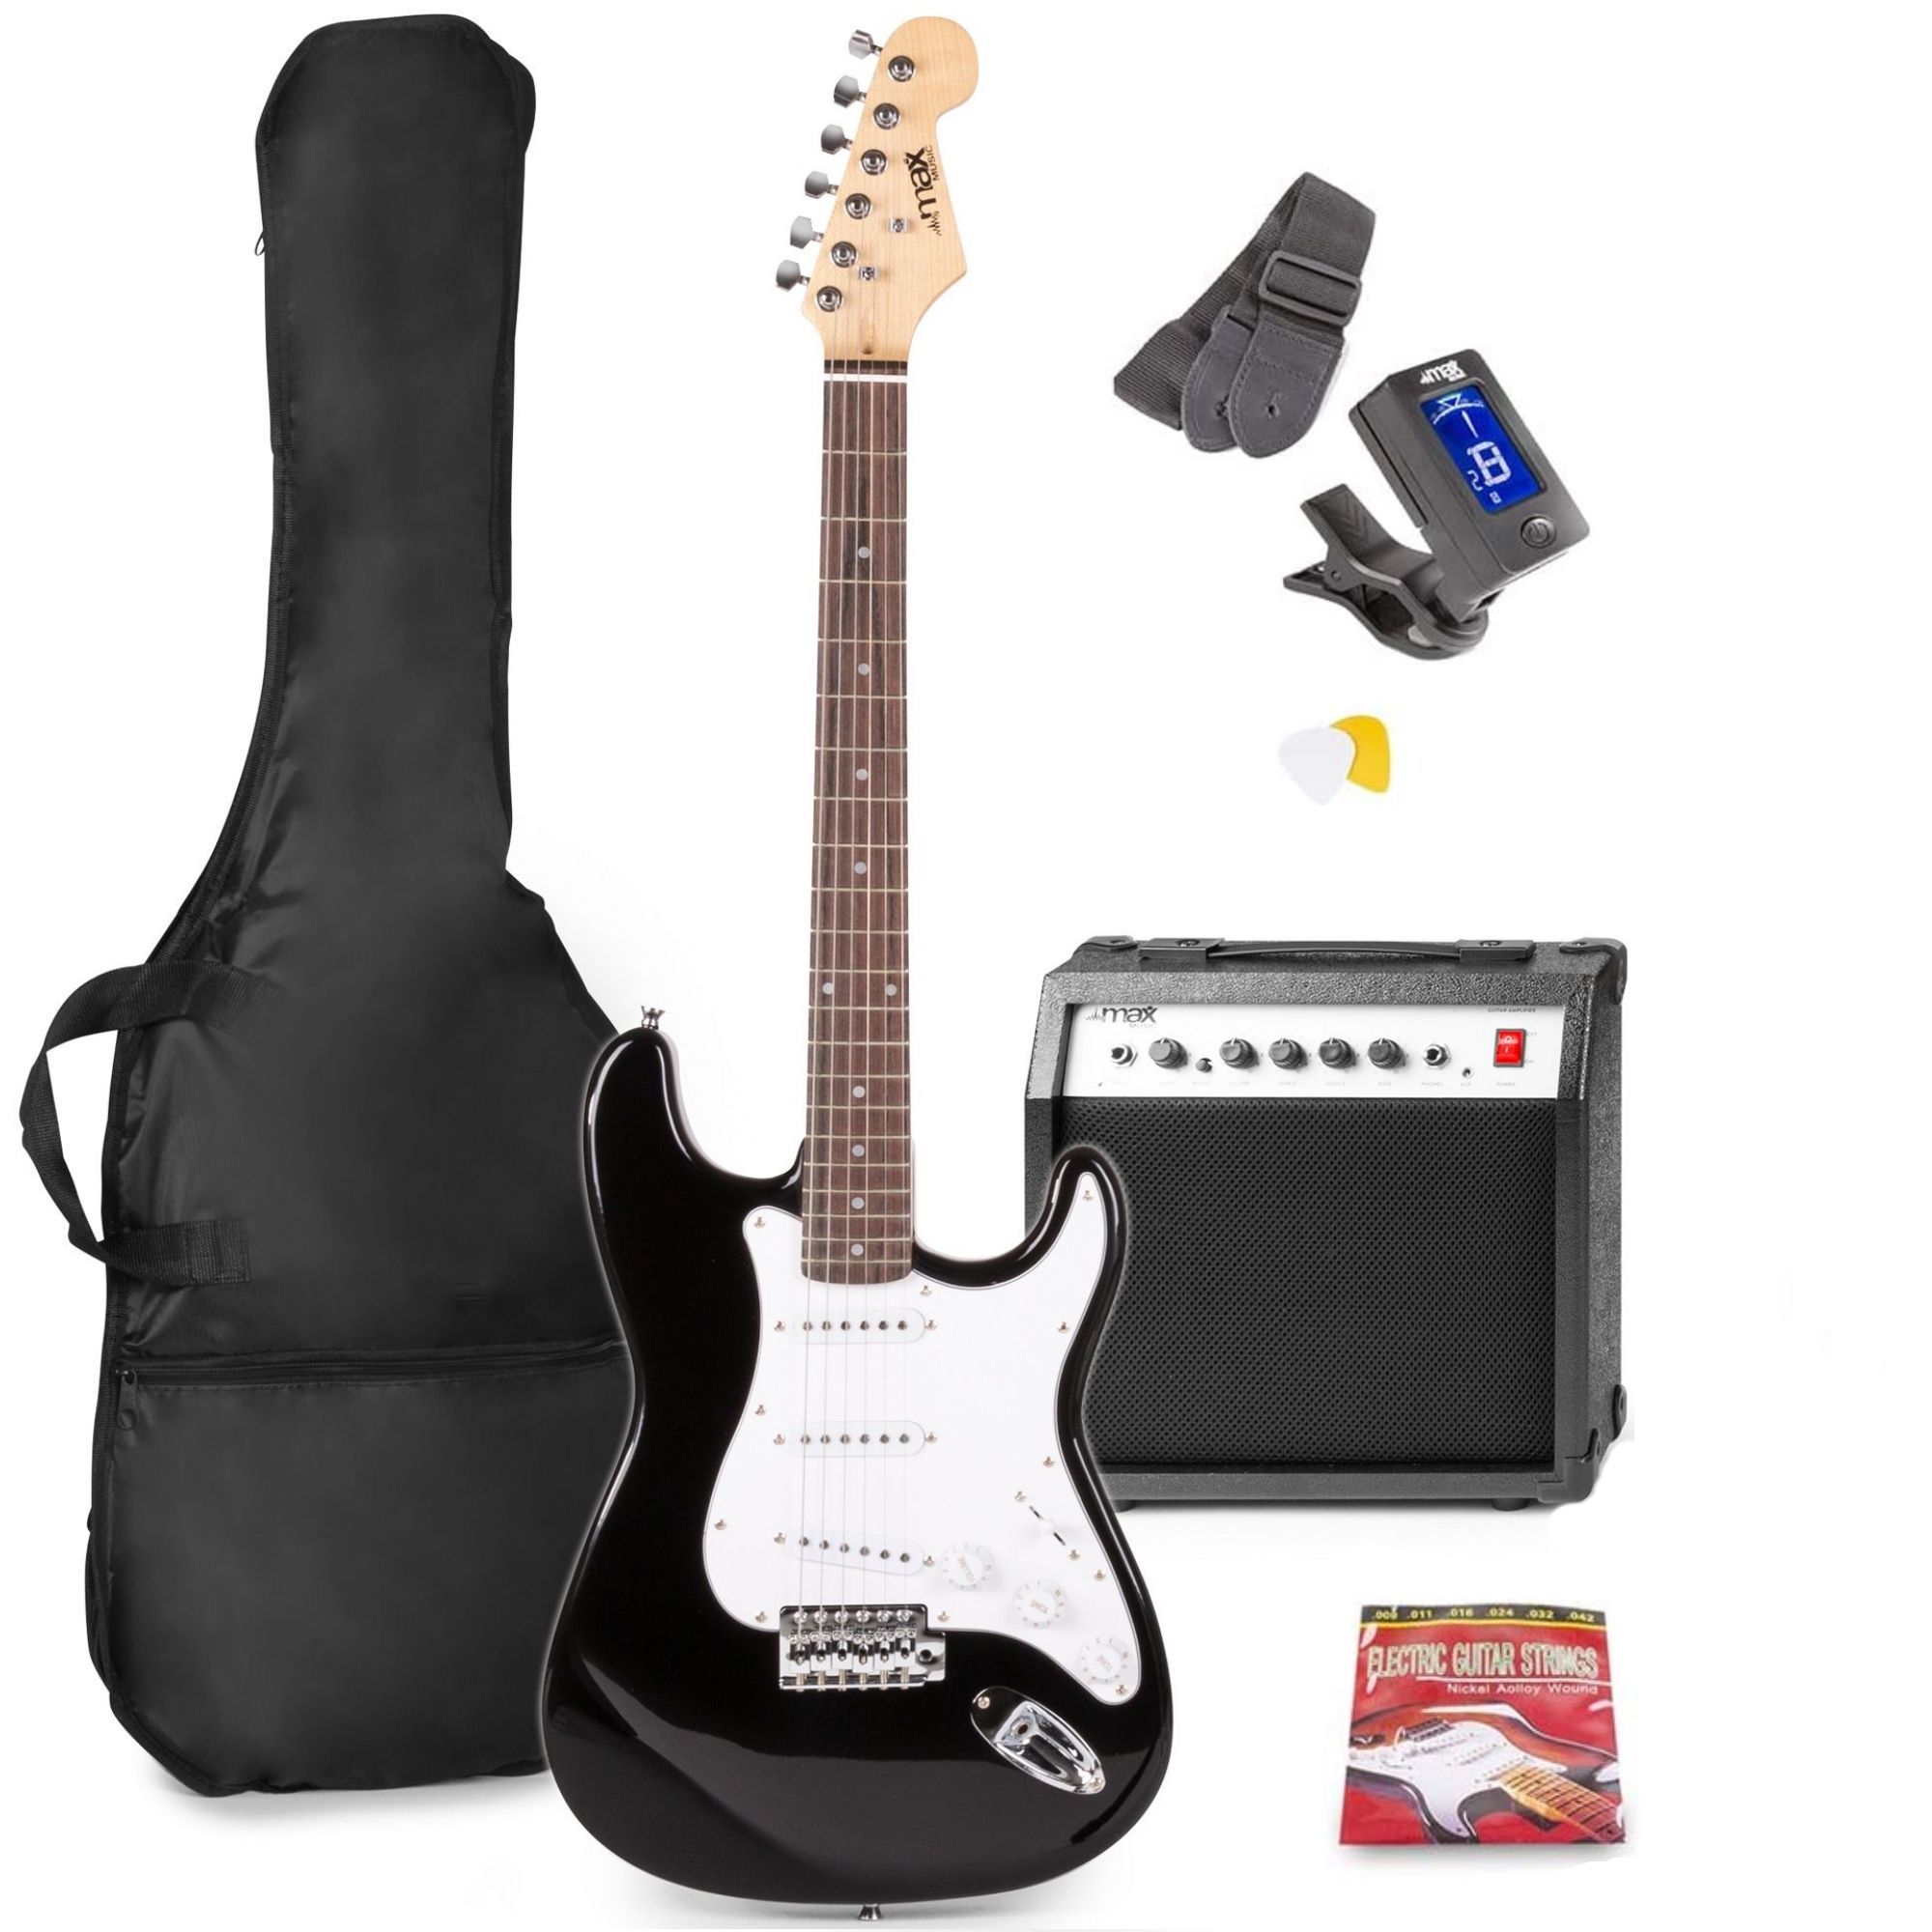 MAX GigKit elektrische gitaar starterset met o.a. 40W versterker - kopen?